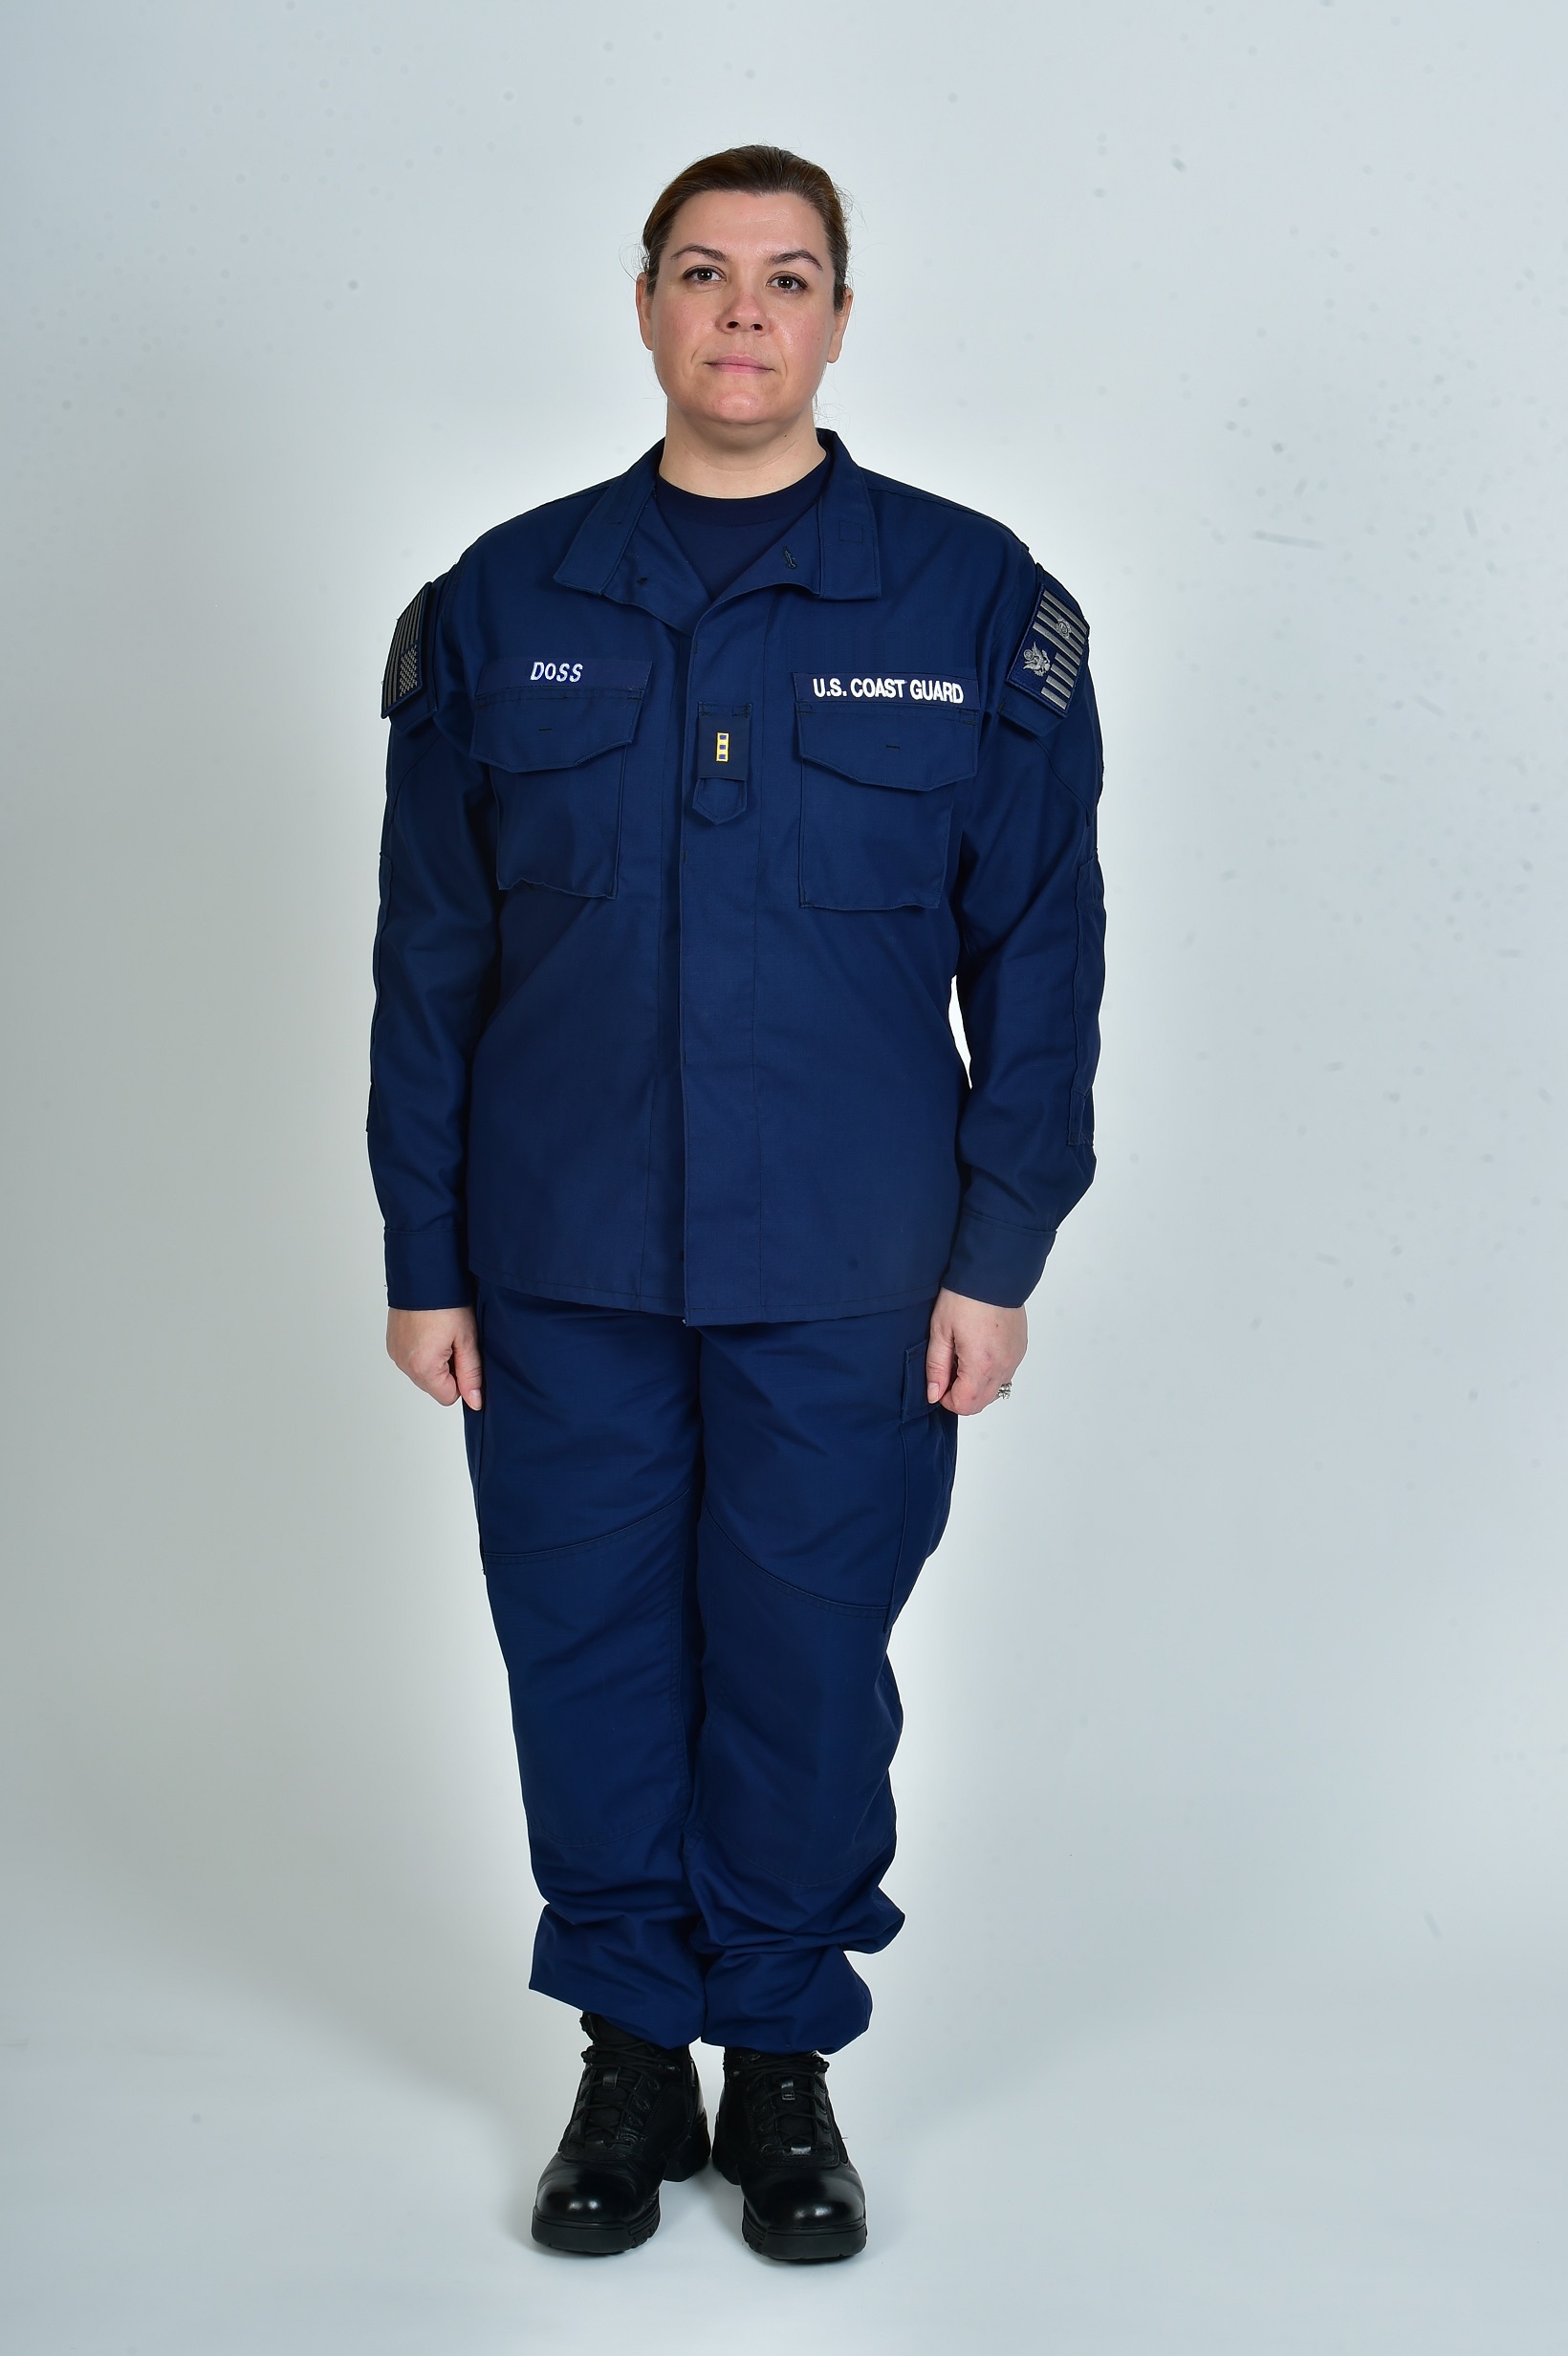 dress uniform for coast guard